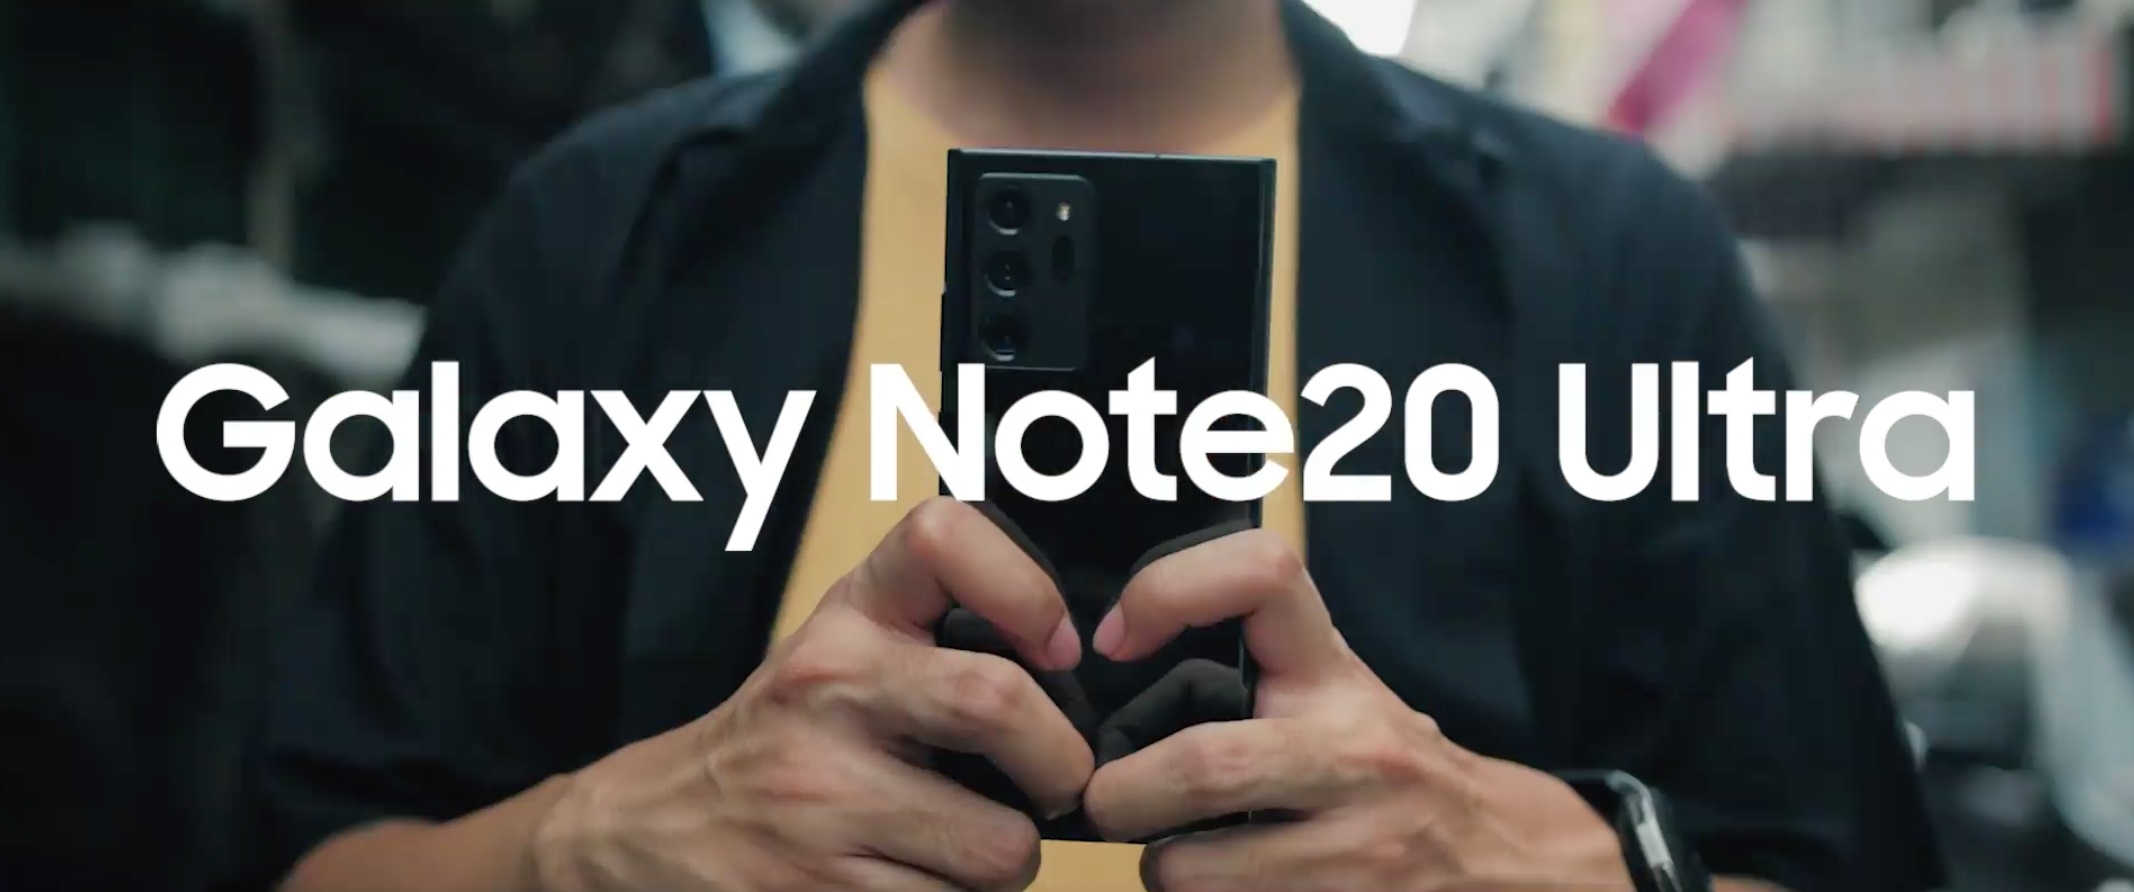 เคล็ดลับสร้างสรรค์ คอนเทนต์ ระดับมืออาชีพบน Galaxy Note20 Series